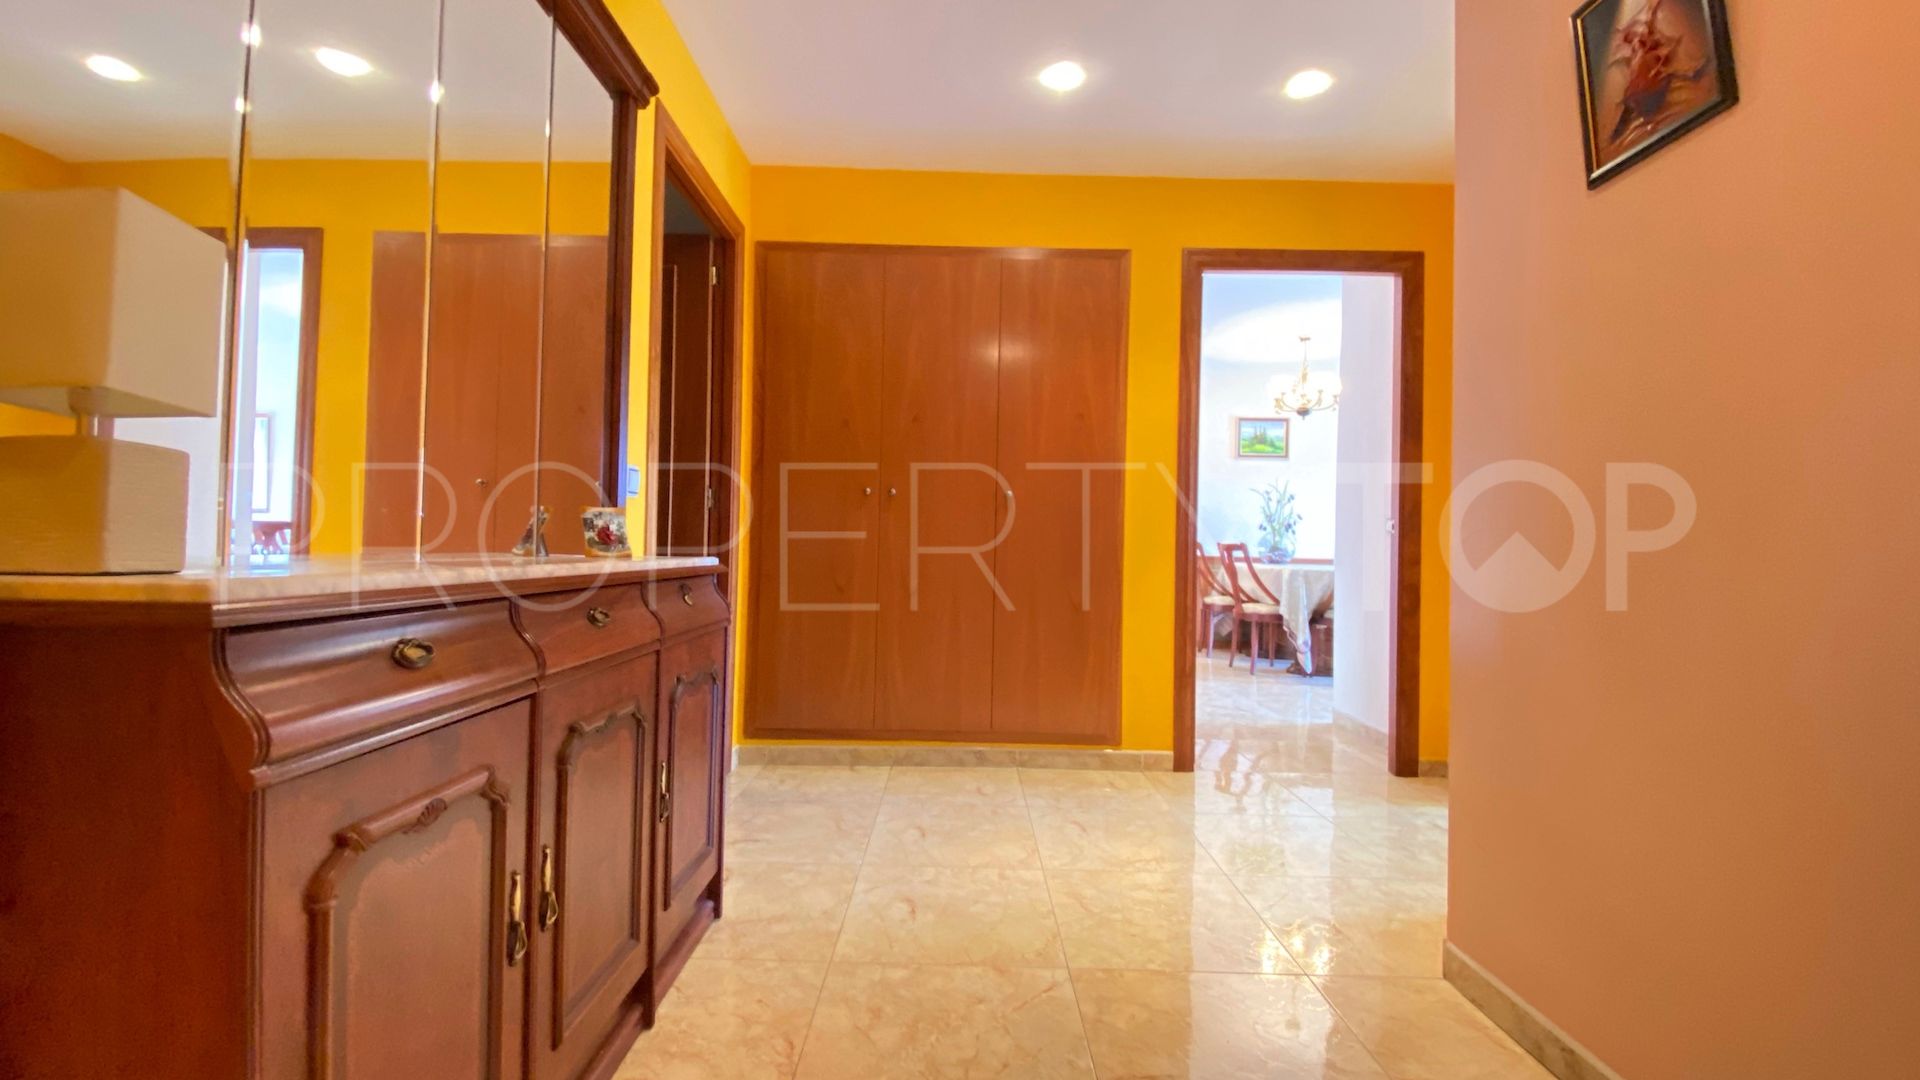 For sale apartment in Lloret de Mar